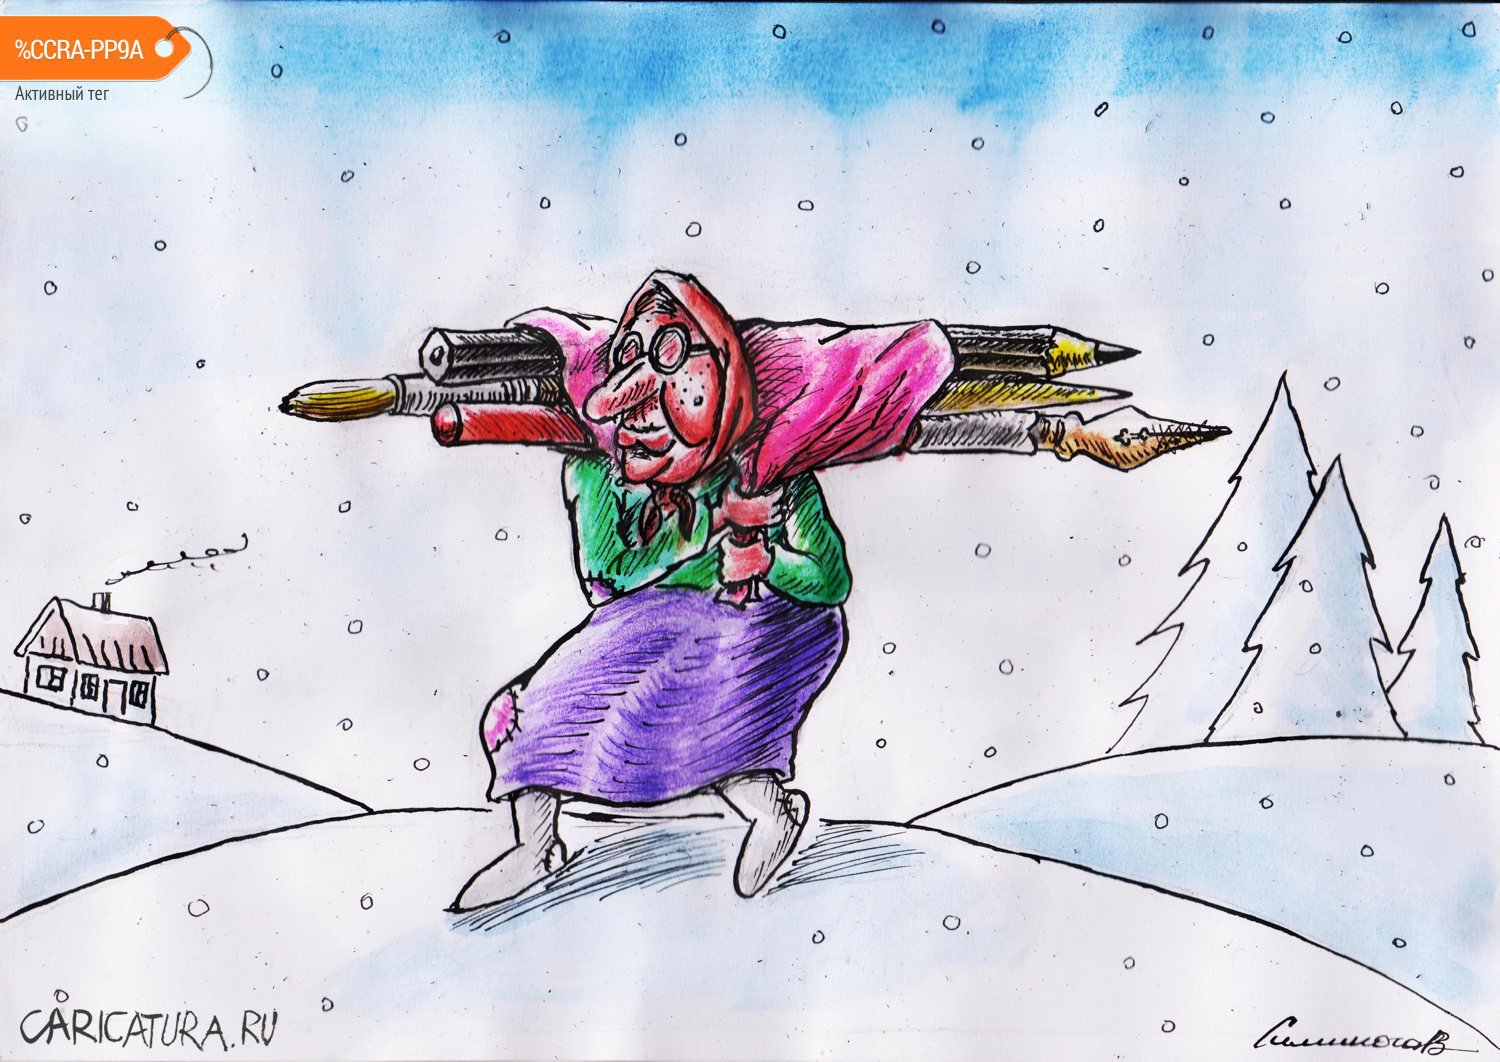 Карикатура "Зима", Vadim Siminoga